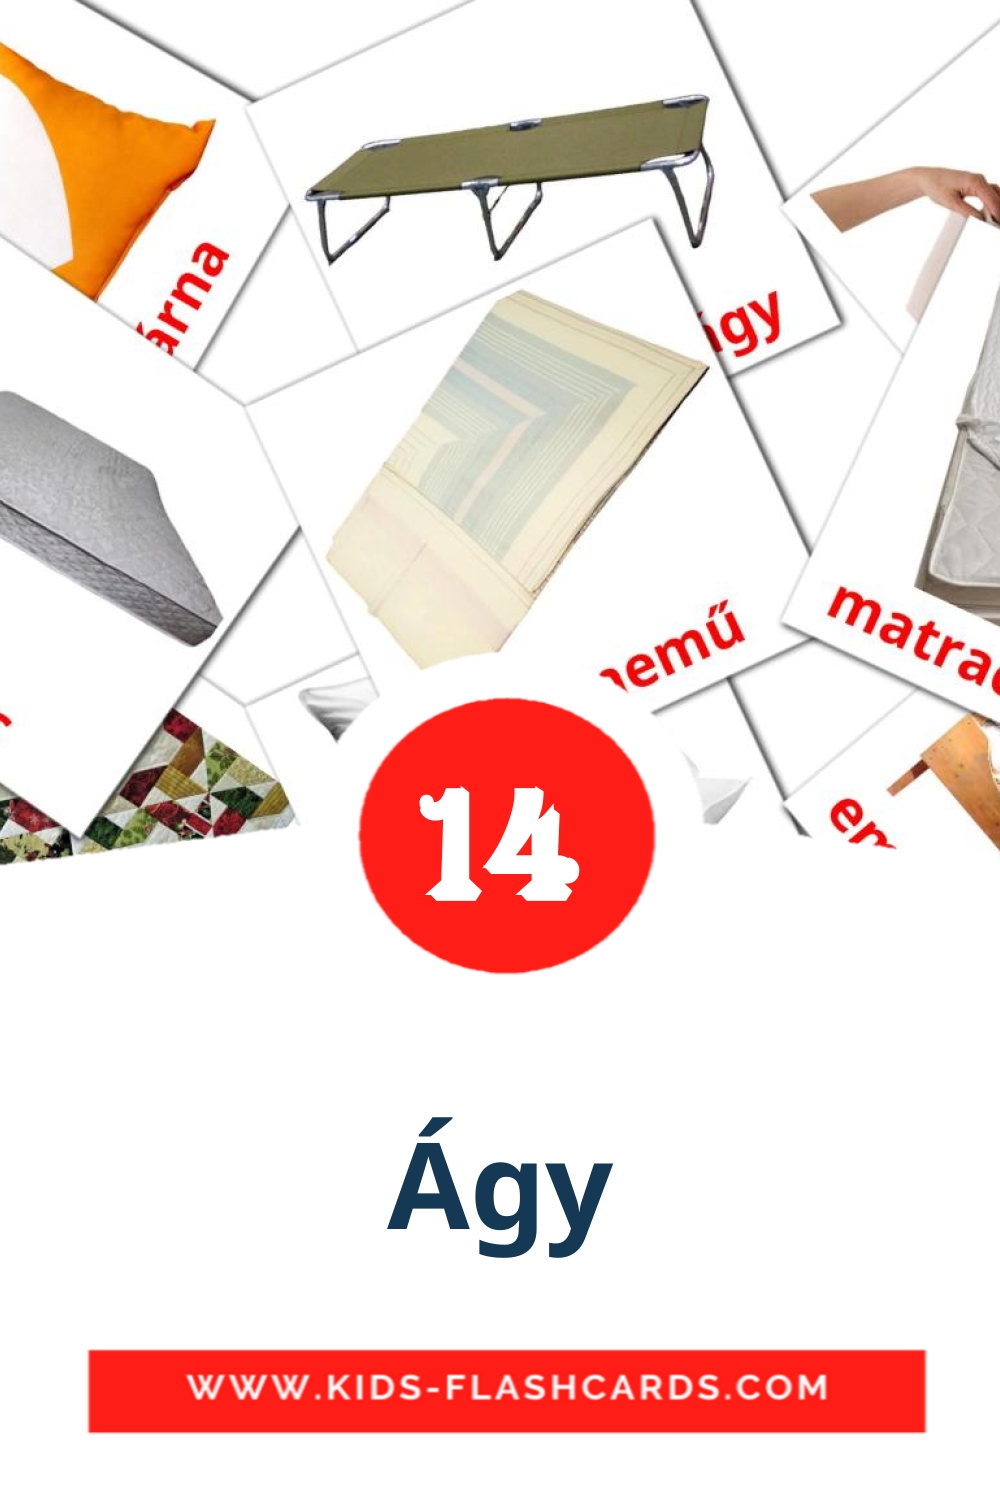 14 Ágy fotokaarten voor kleuters in het hongaars